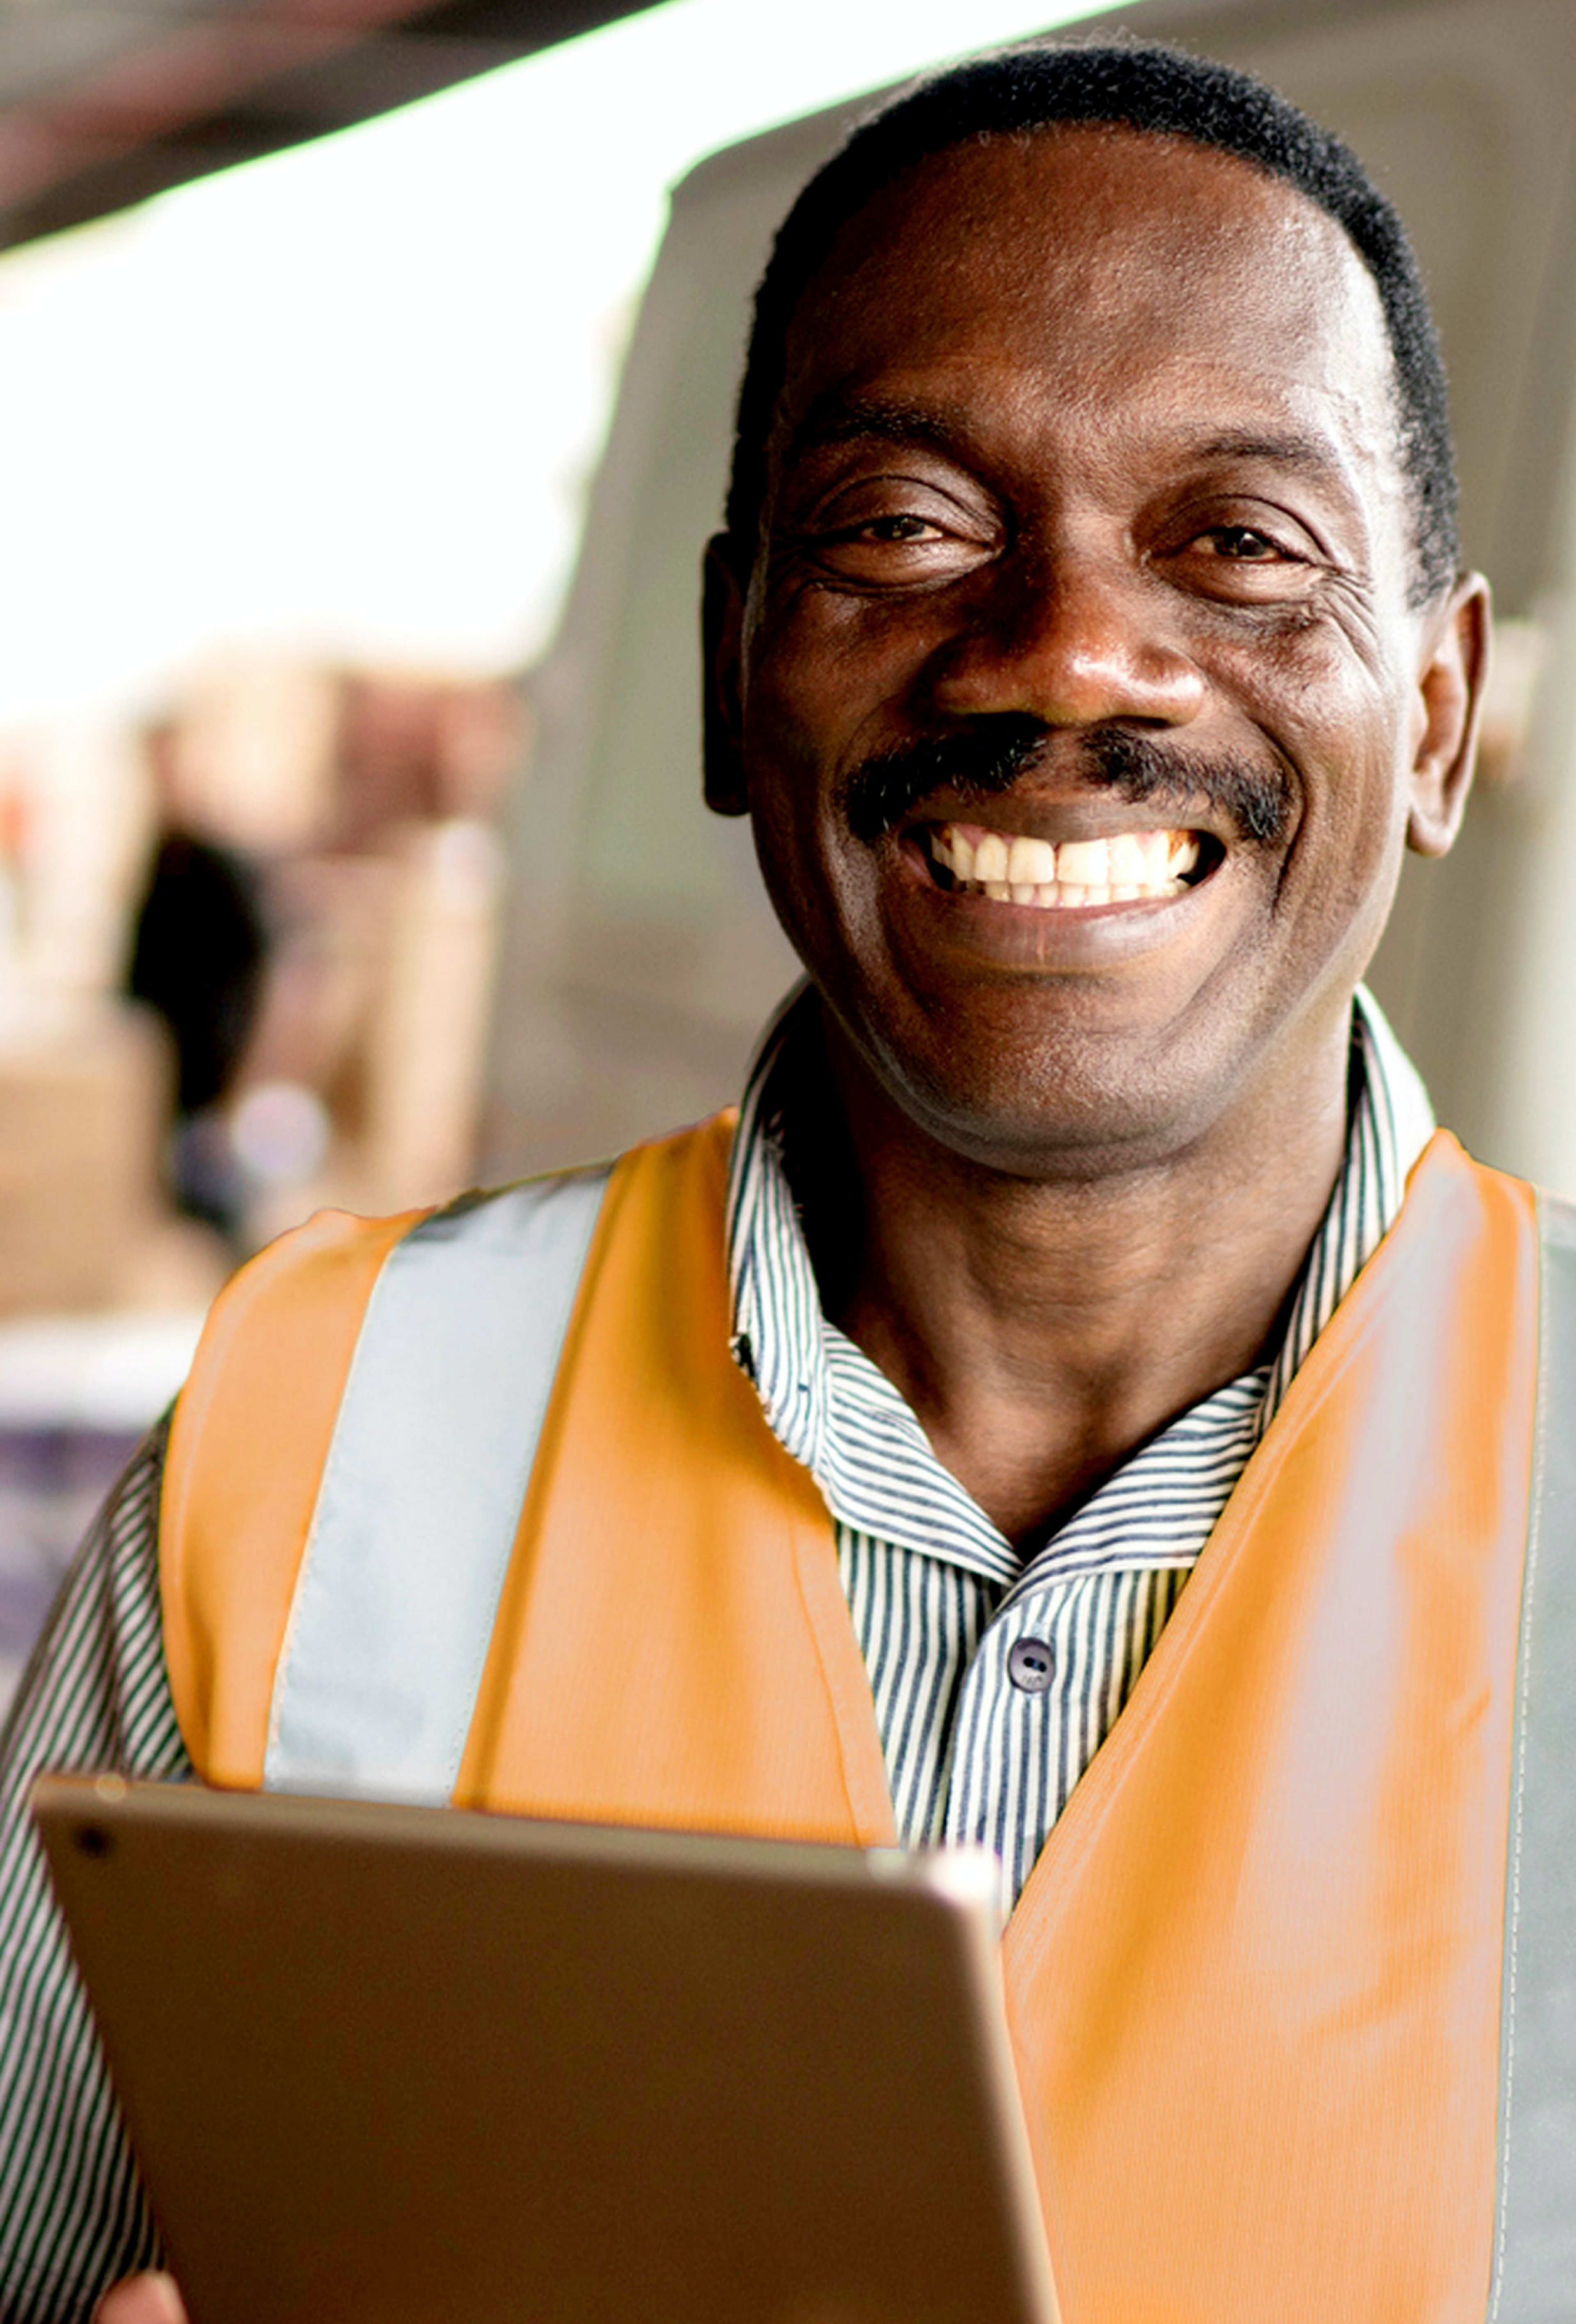  Photo d'un homme africain souriant portant un gilet de sécurité orange et tenant un ipad